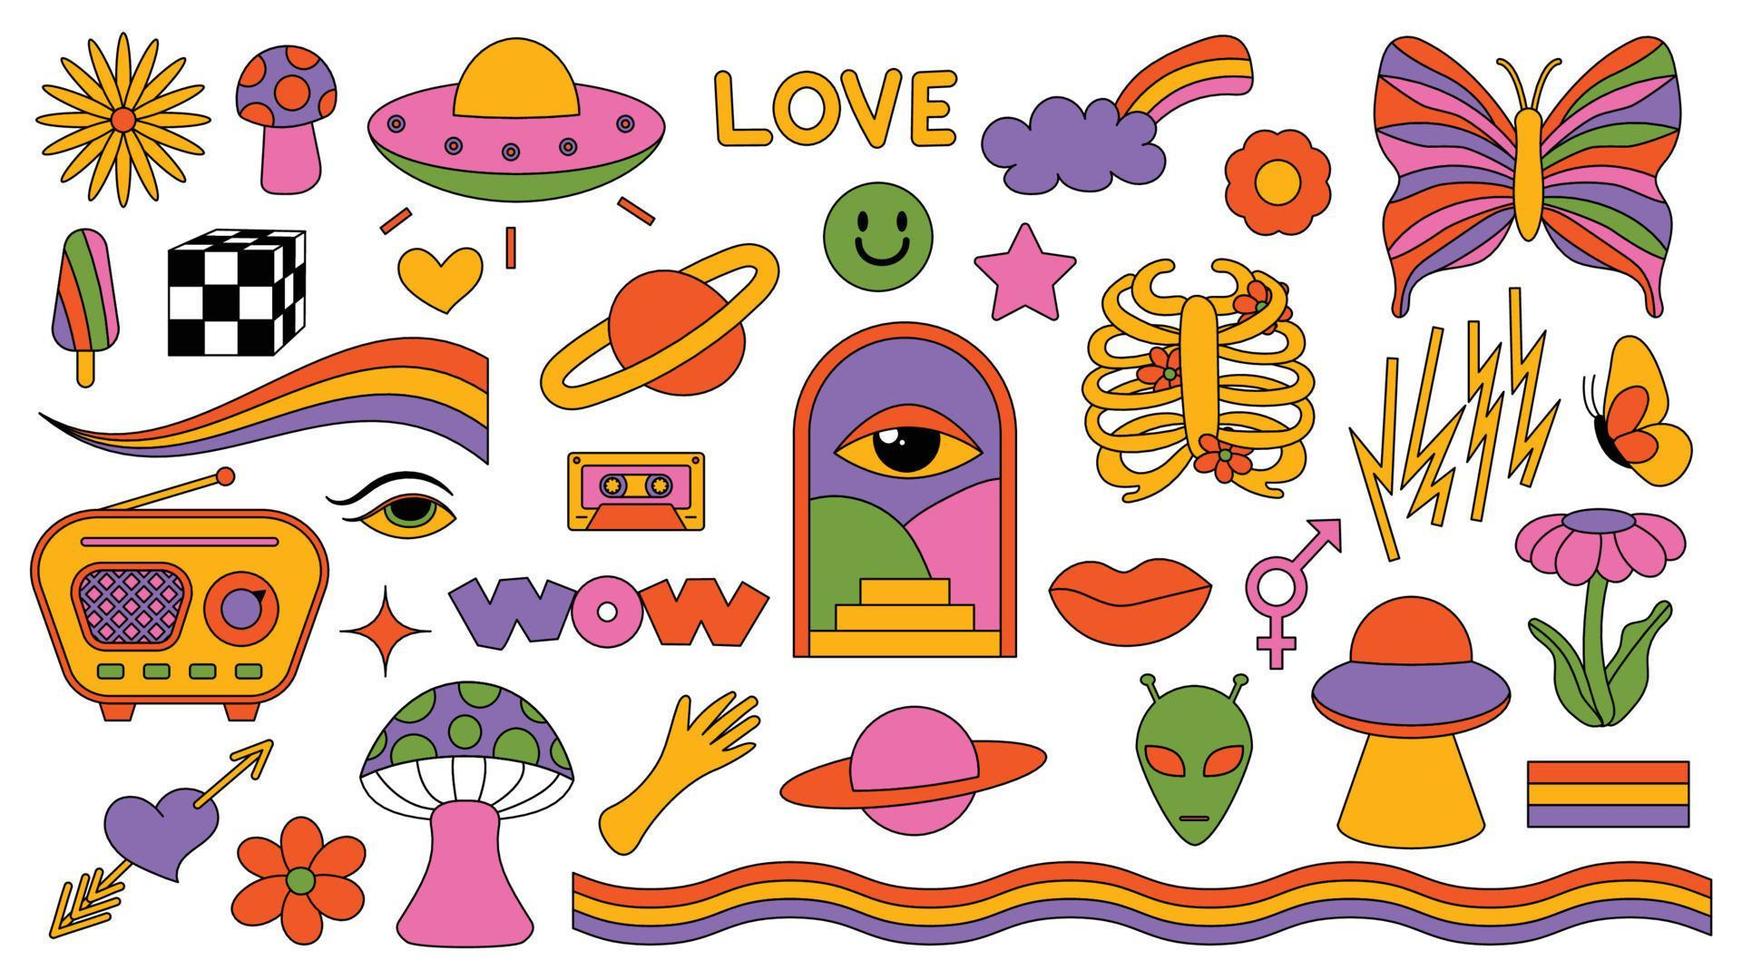 uppsättning hipster retro coola psykedeliska element. samling klistermärken av groovy cliparts från 70-talet 60-talet. collage med trendig popkänsla med läckert designelement. abstrakt bakgrund av tecknad klistermärke vektor